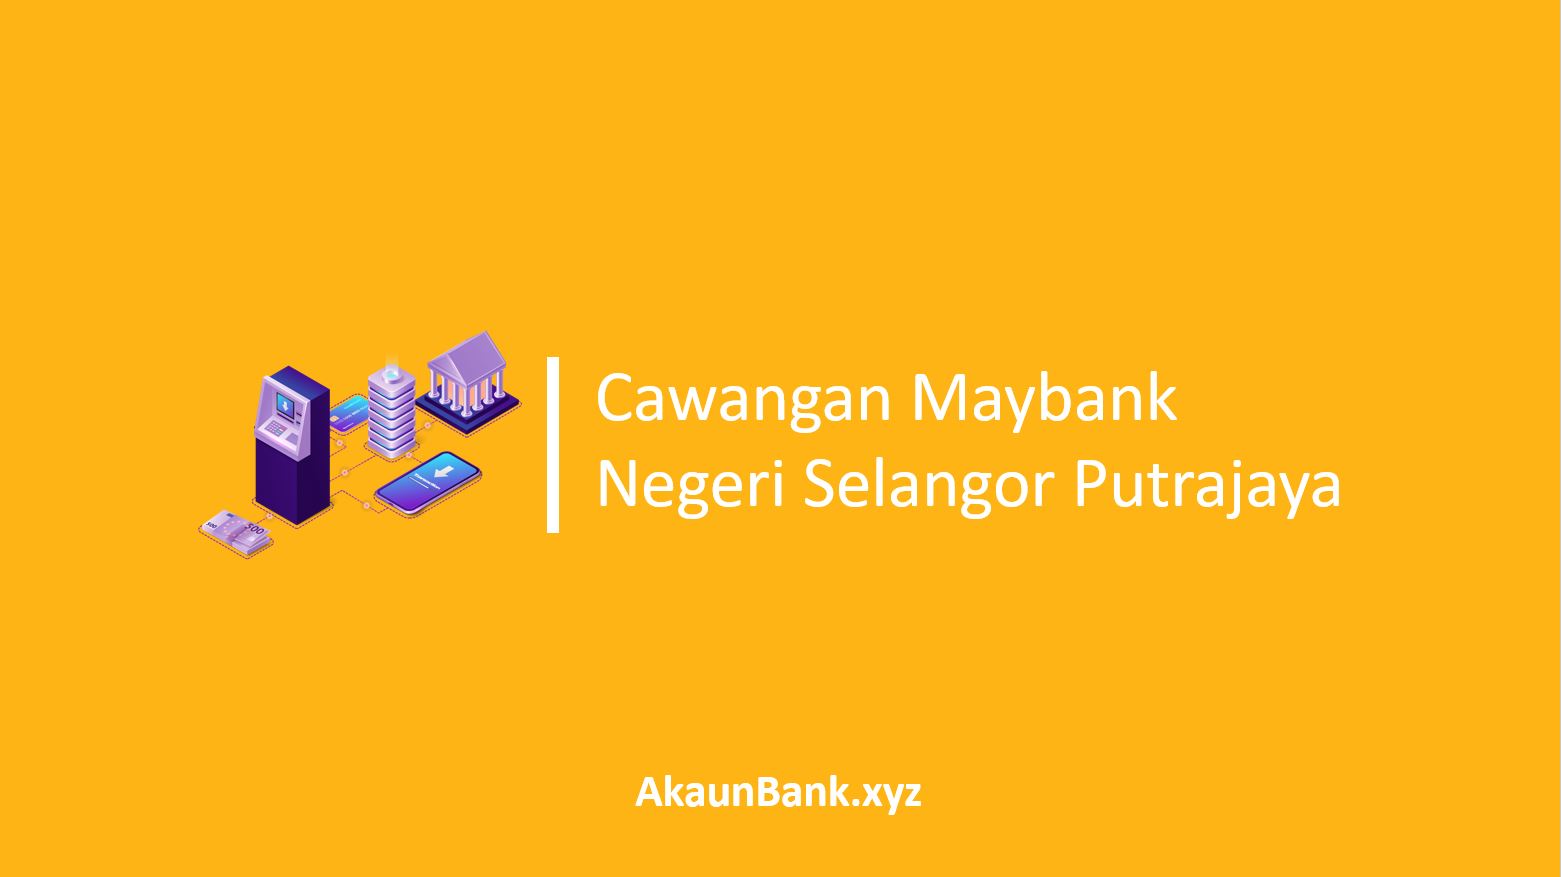 Cawangan Maybank Negeri Selangor Putrajaya